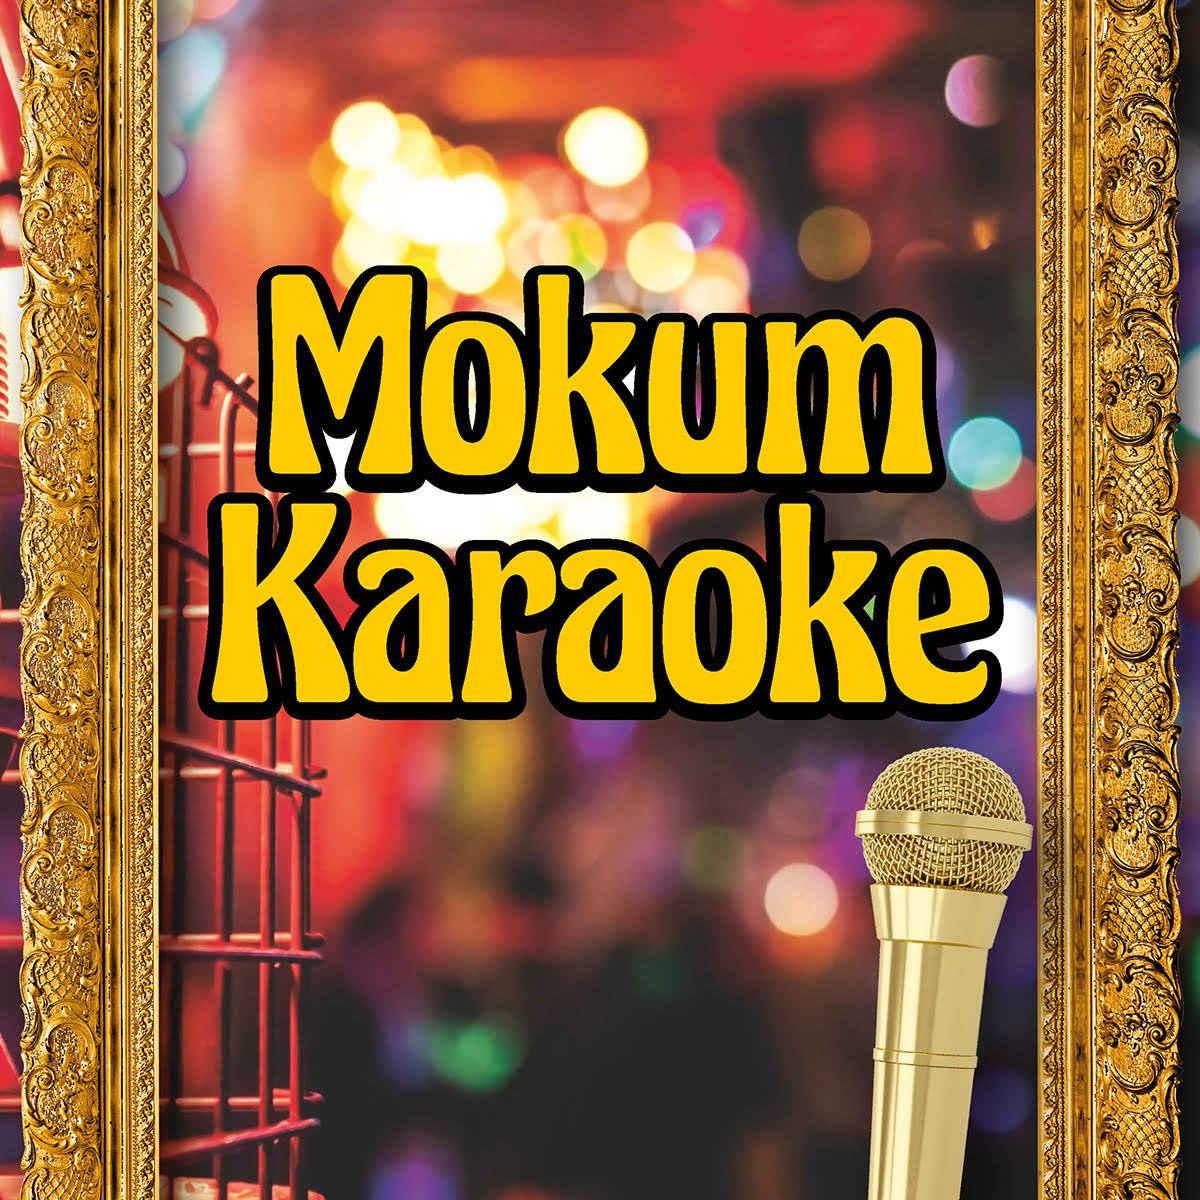 karaoke bar amsterdam mokum room.jpg